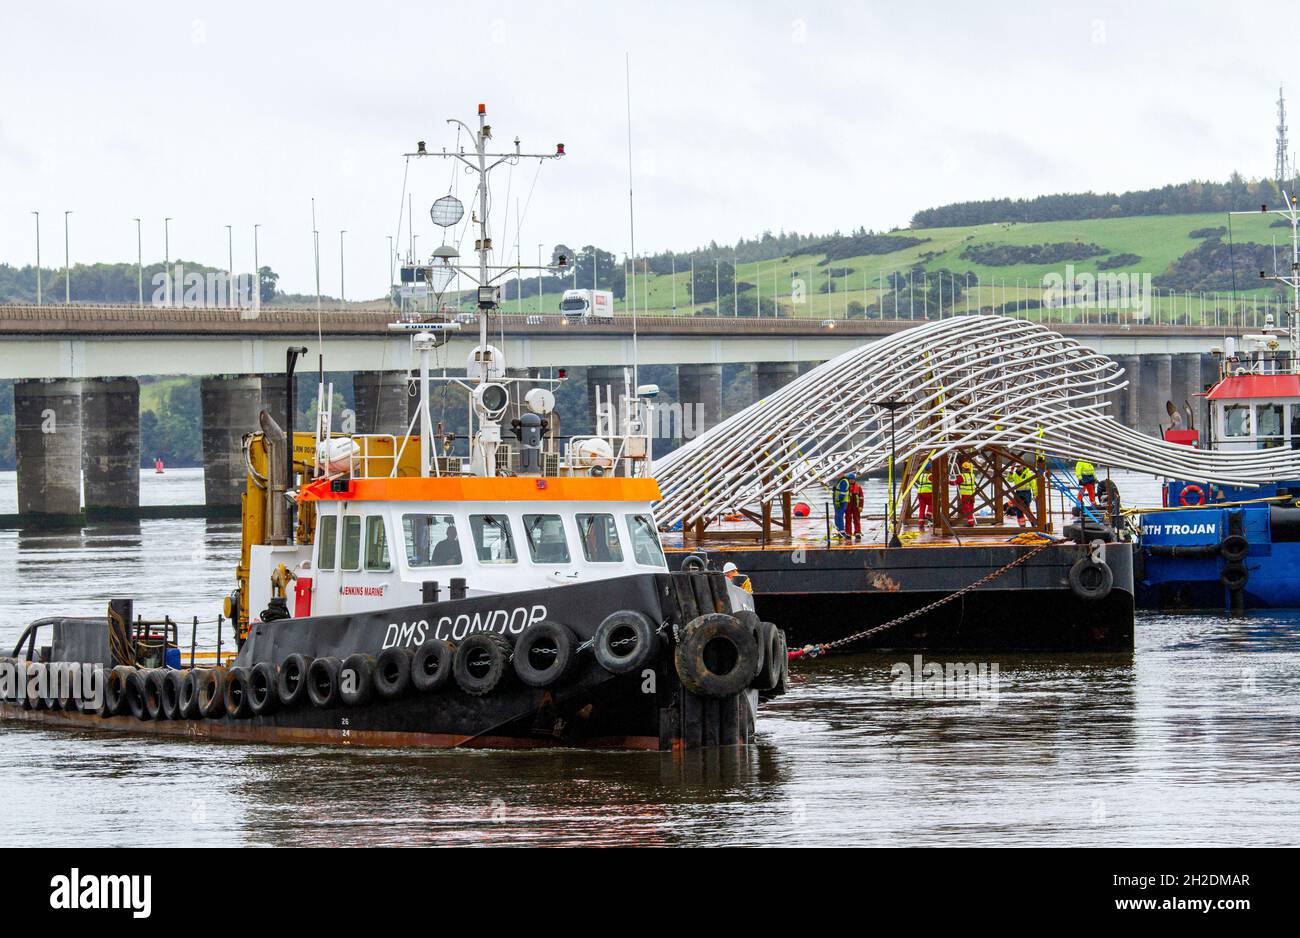 La sculpture de baleine à bosse géant de 1 m £, d'une hauteur de 36 mètres et de 22 tonnes, est arrivée pour être installée à côté du V&A Design Museum à Dundee, en Écosse Banque D'Images